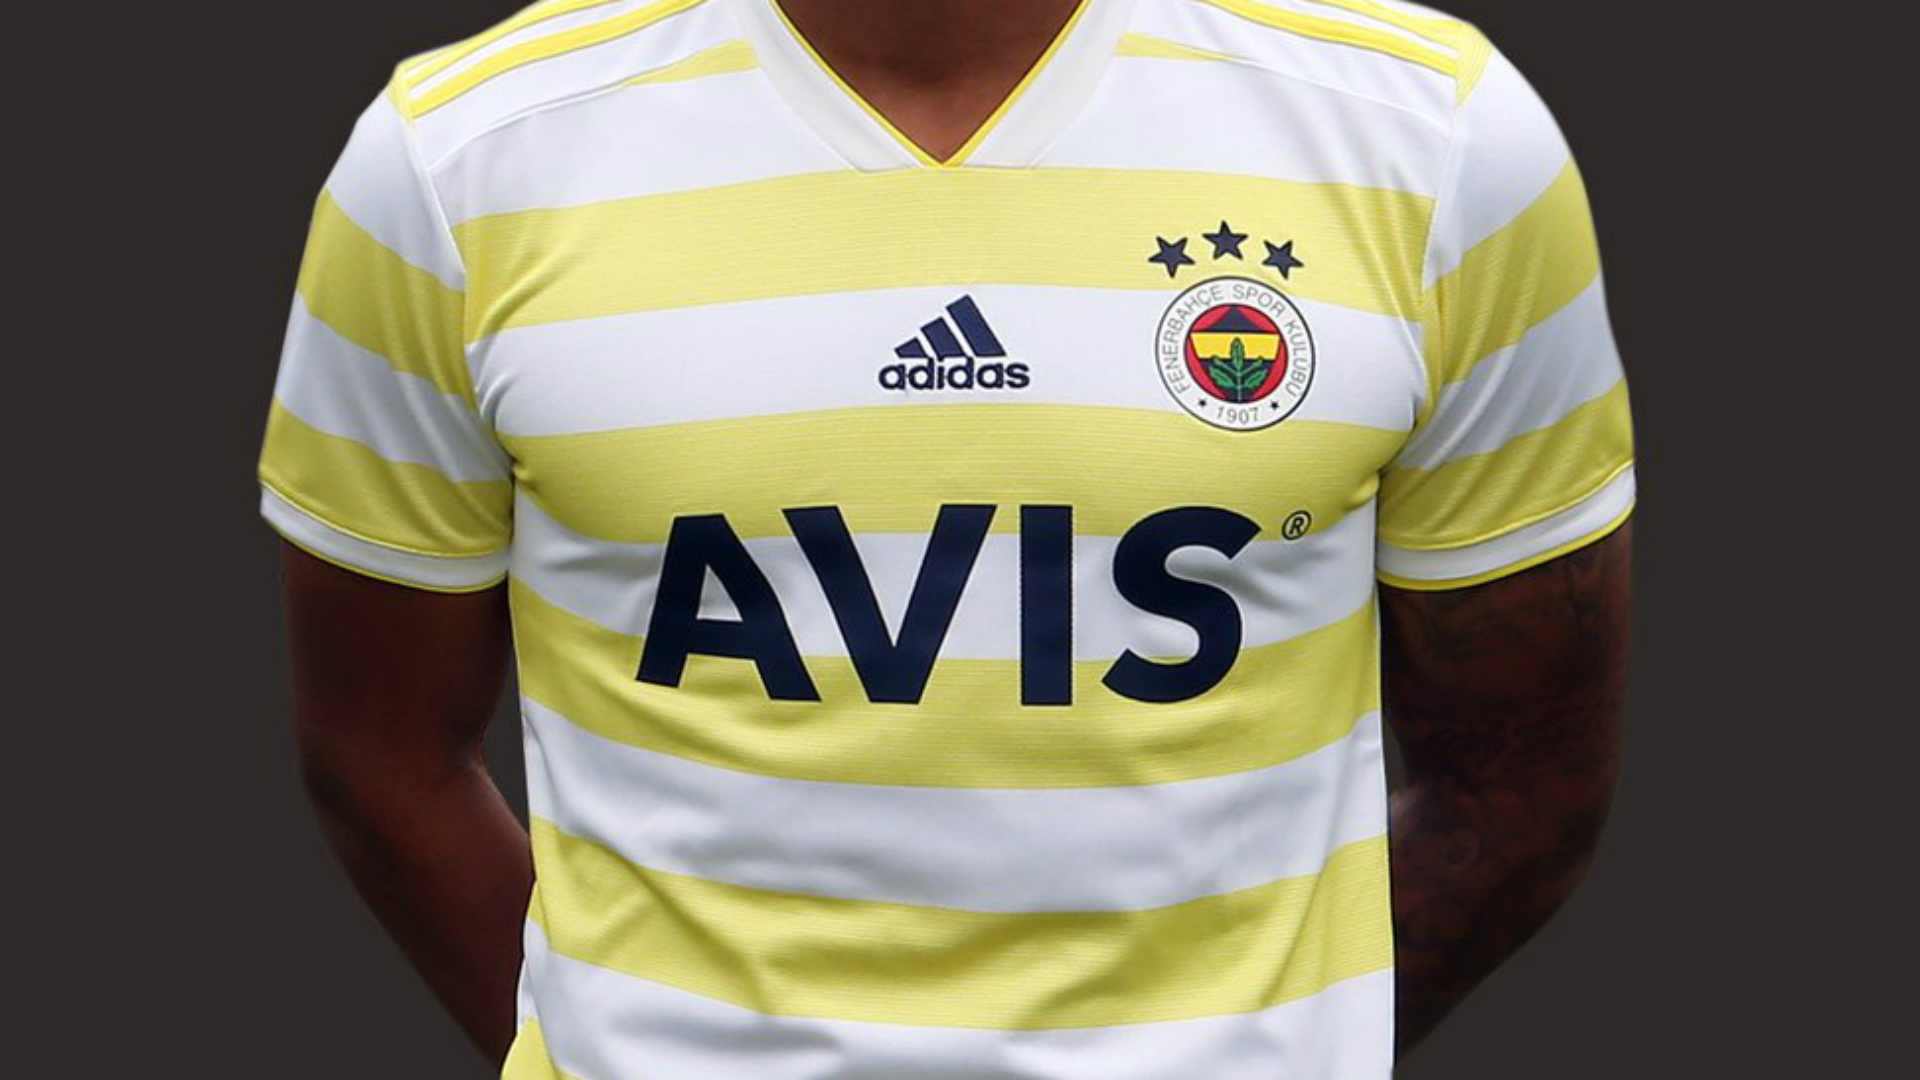 Fenerbahçe – AVIS Sponsorluk Anlaşması Detayları